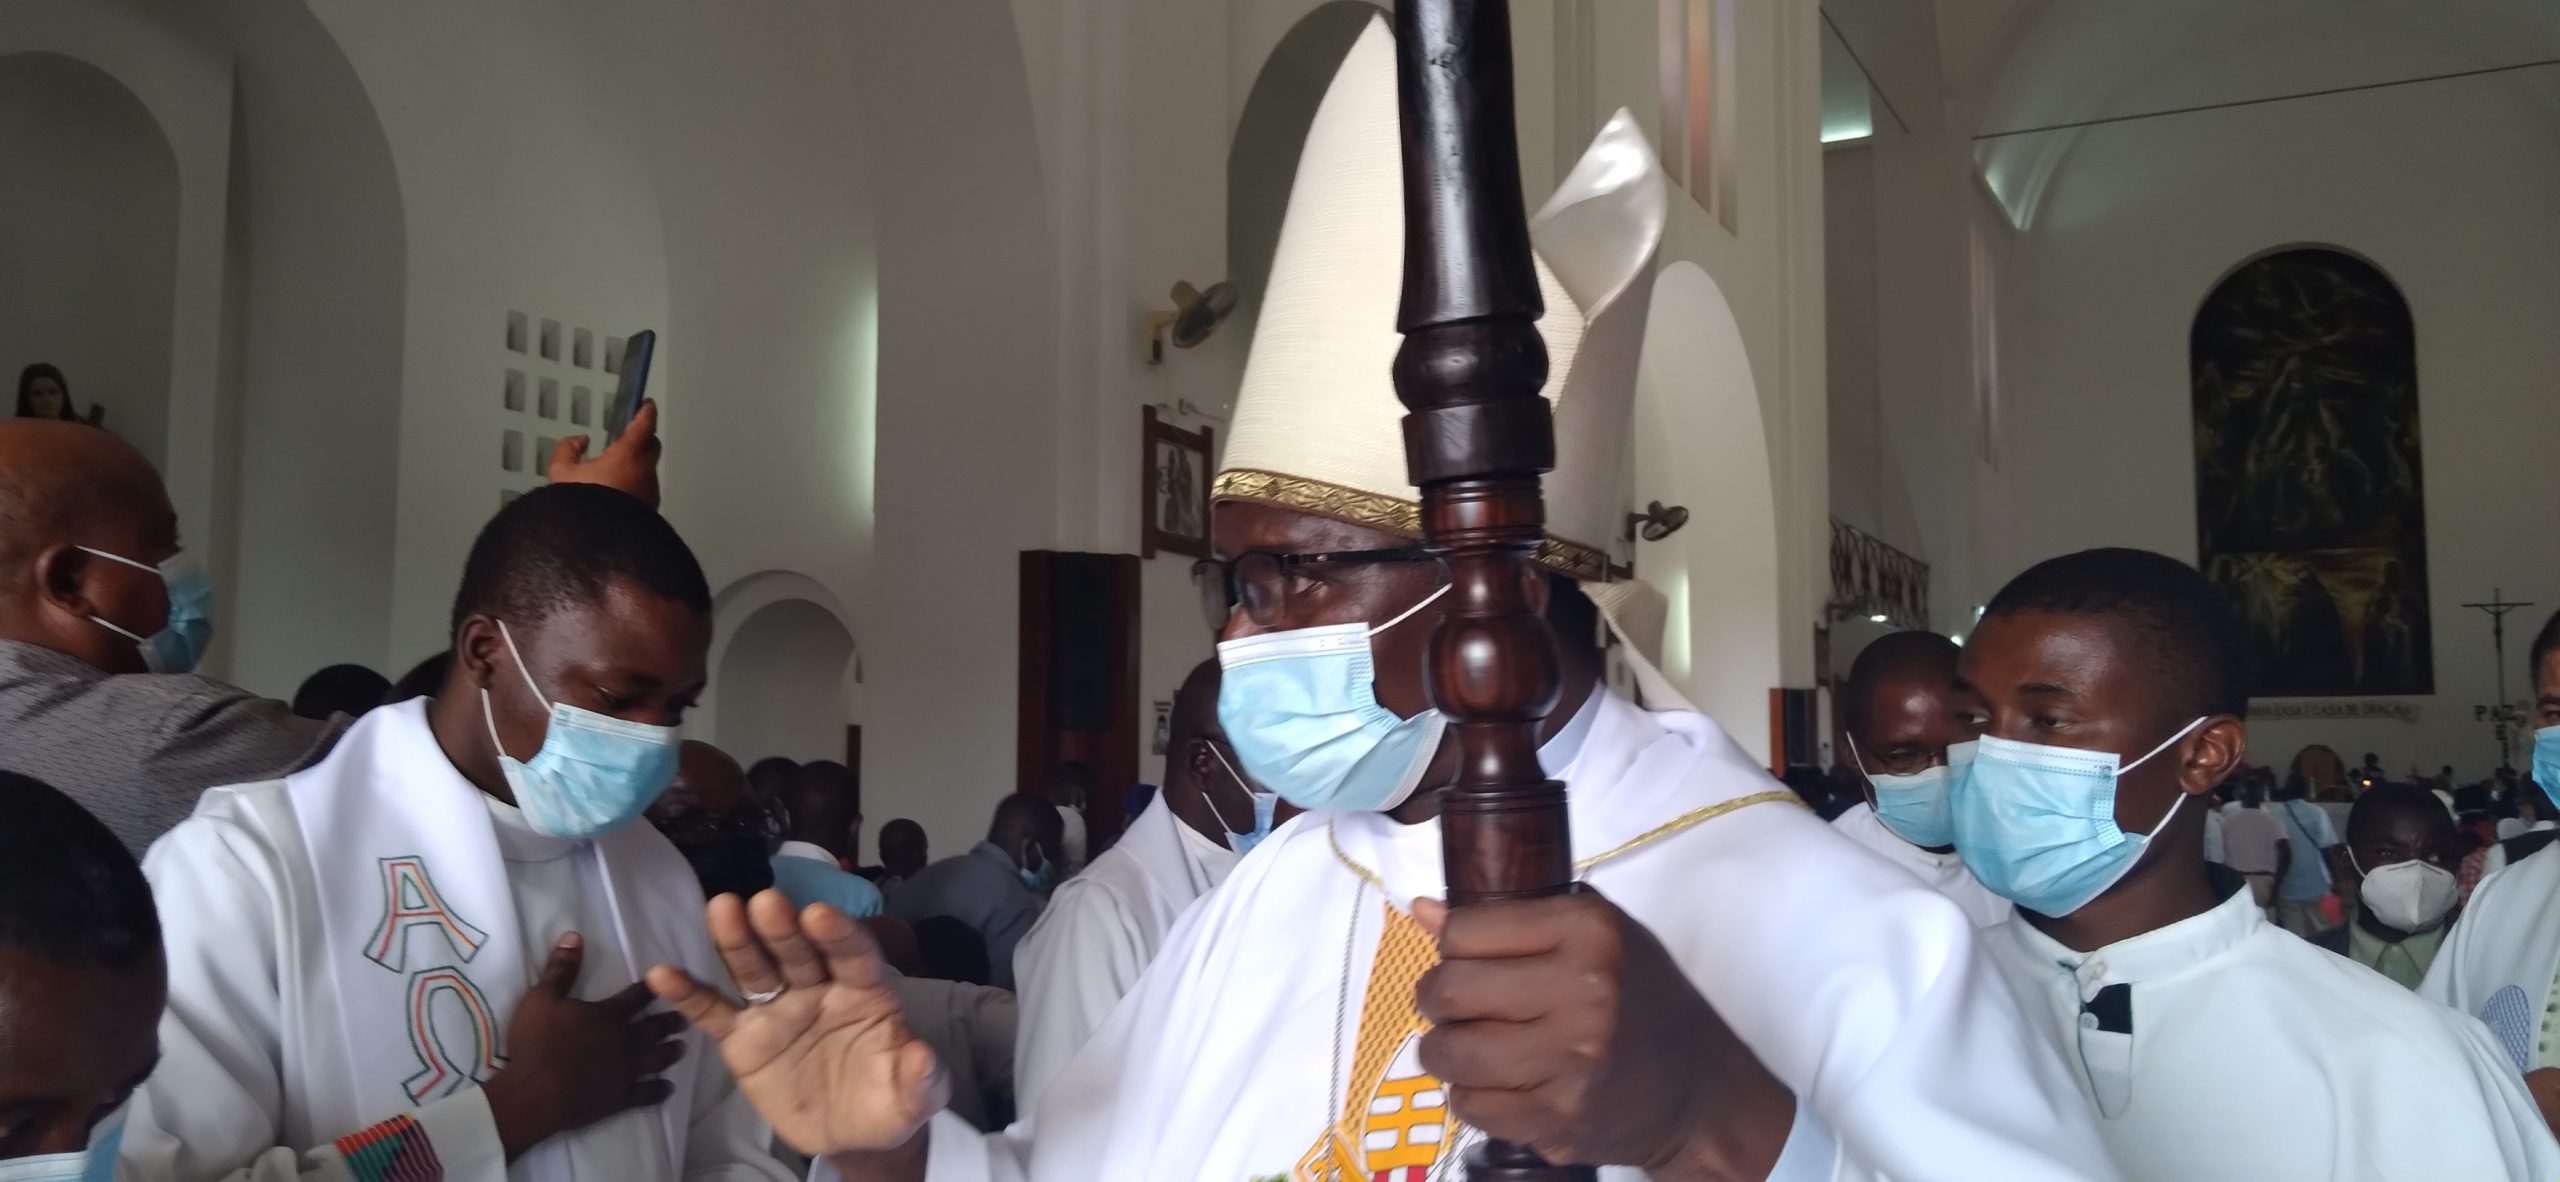 O Clero Diocesano de Nampula considera Dom Maguenge um líder espiritual incontornável